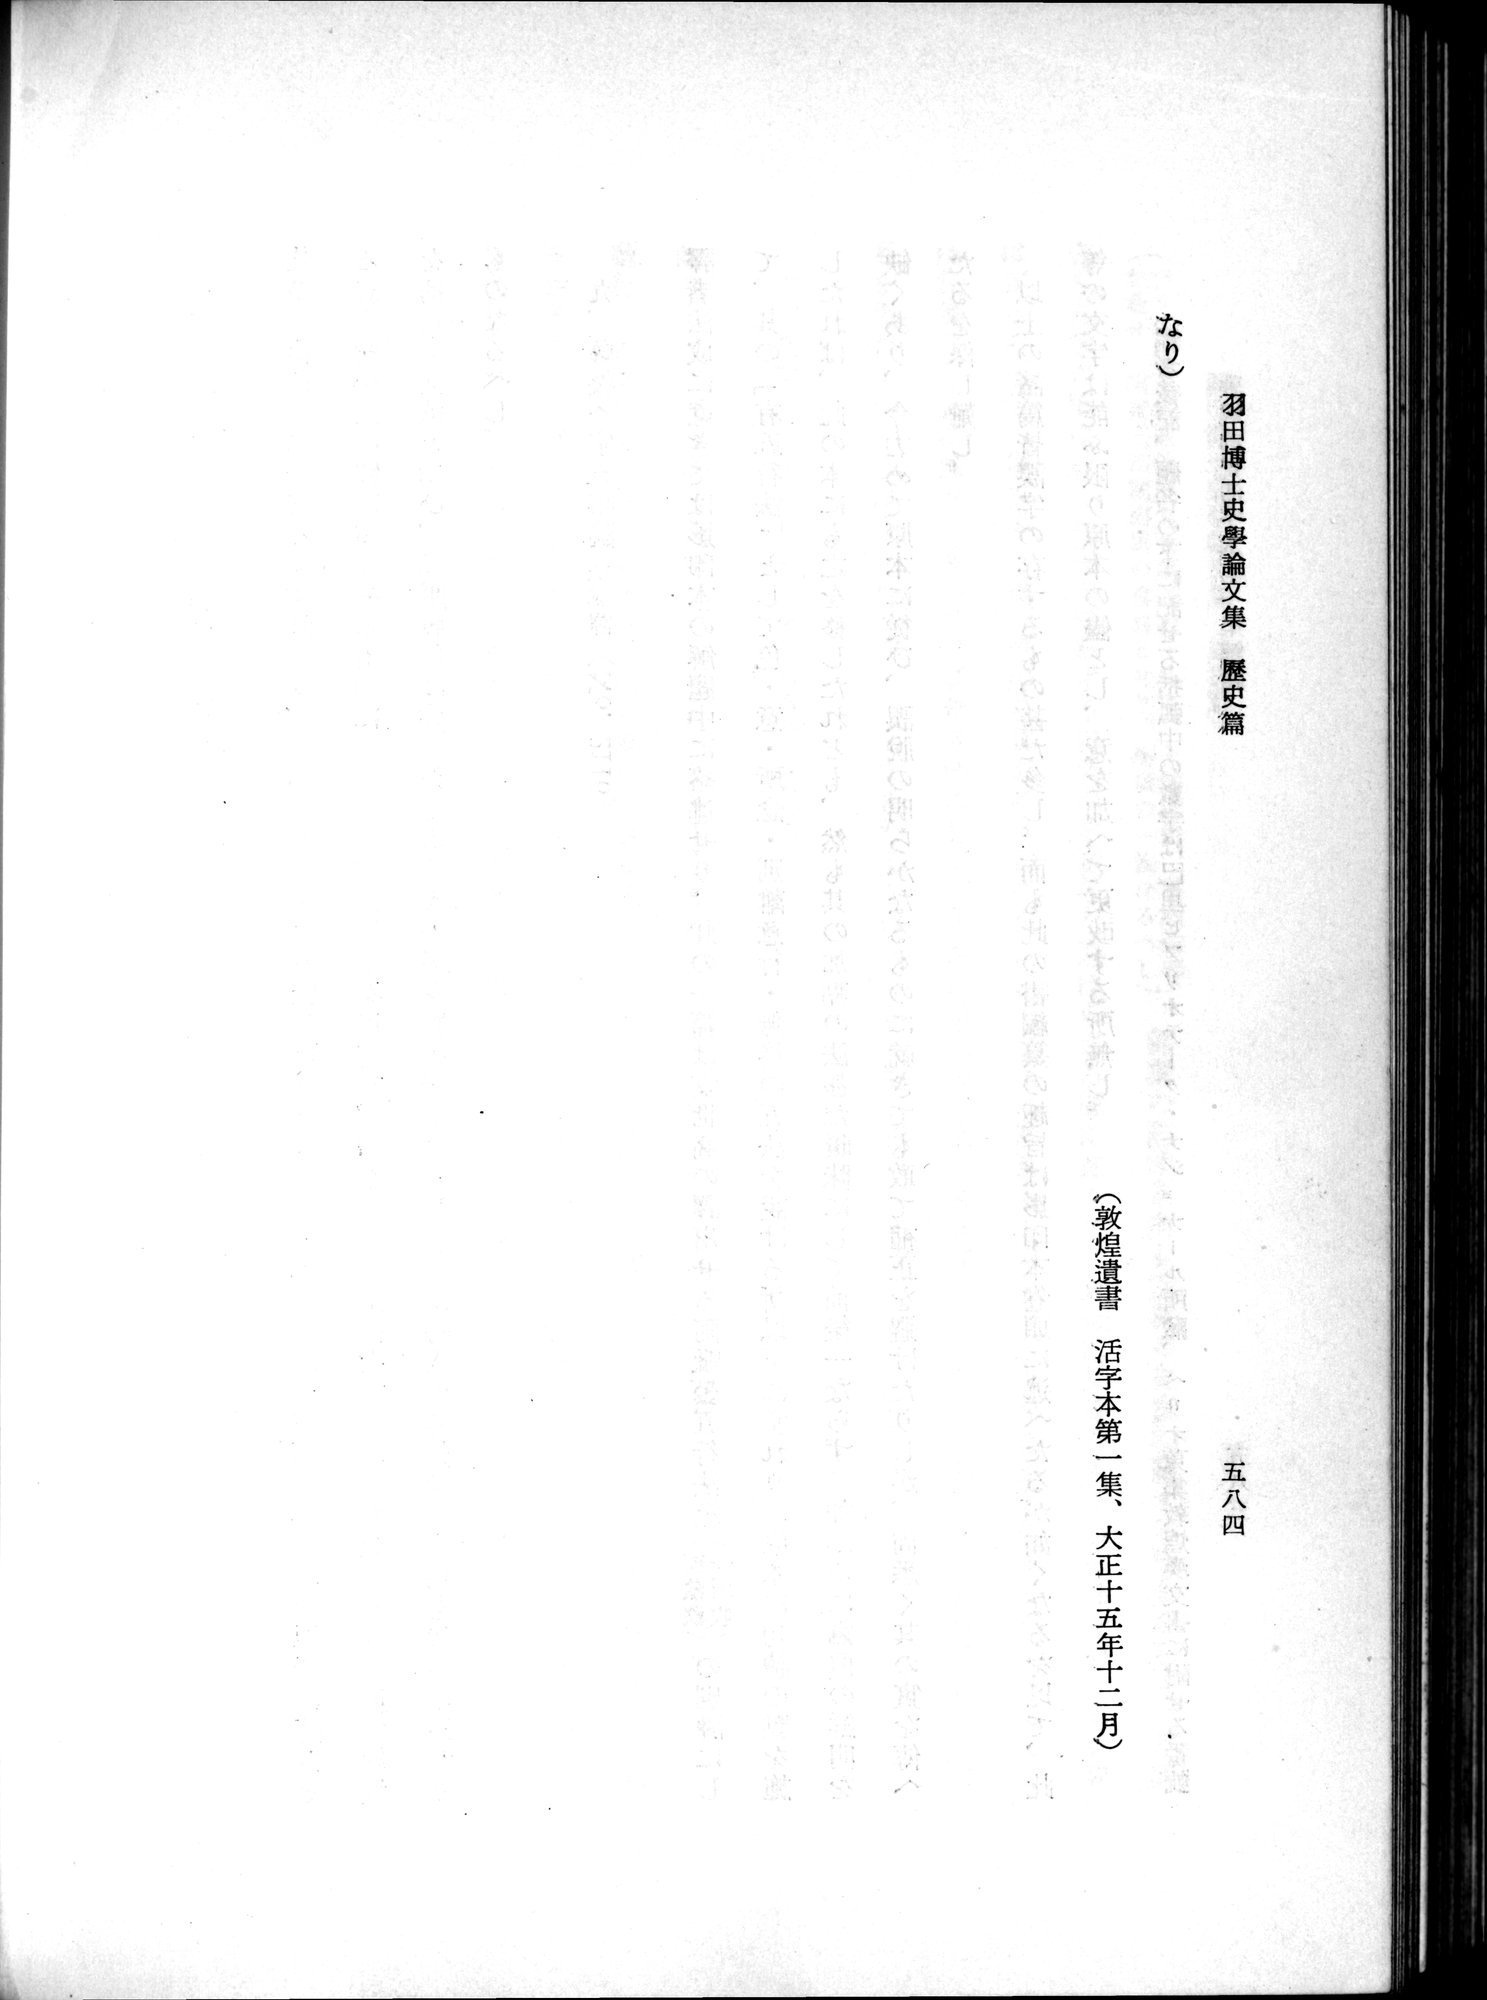 羽田博士史学論文集 : vol.1 / Page 622 (Grayscale High Resolution Image)